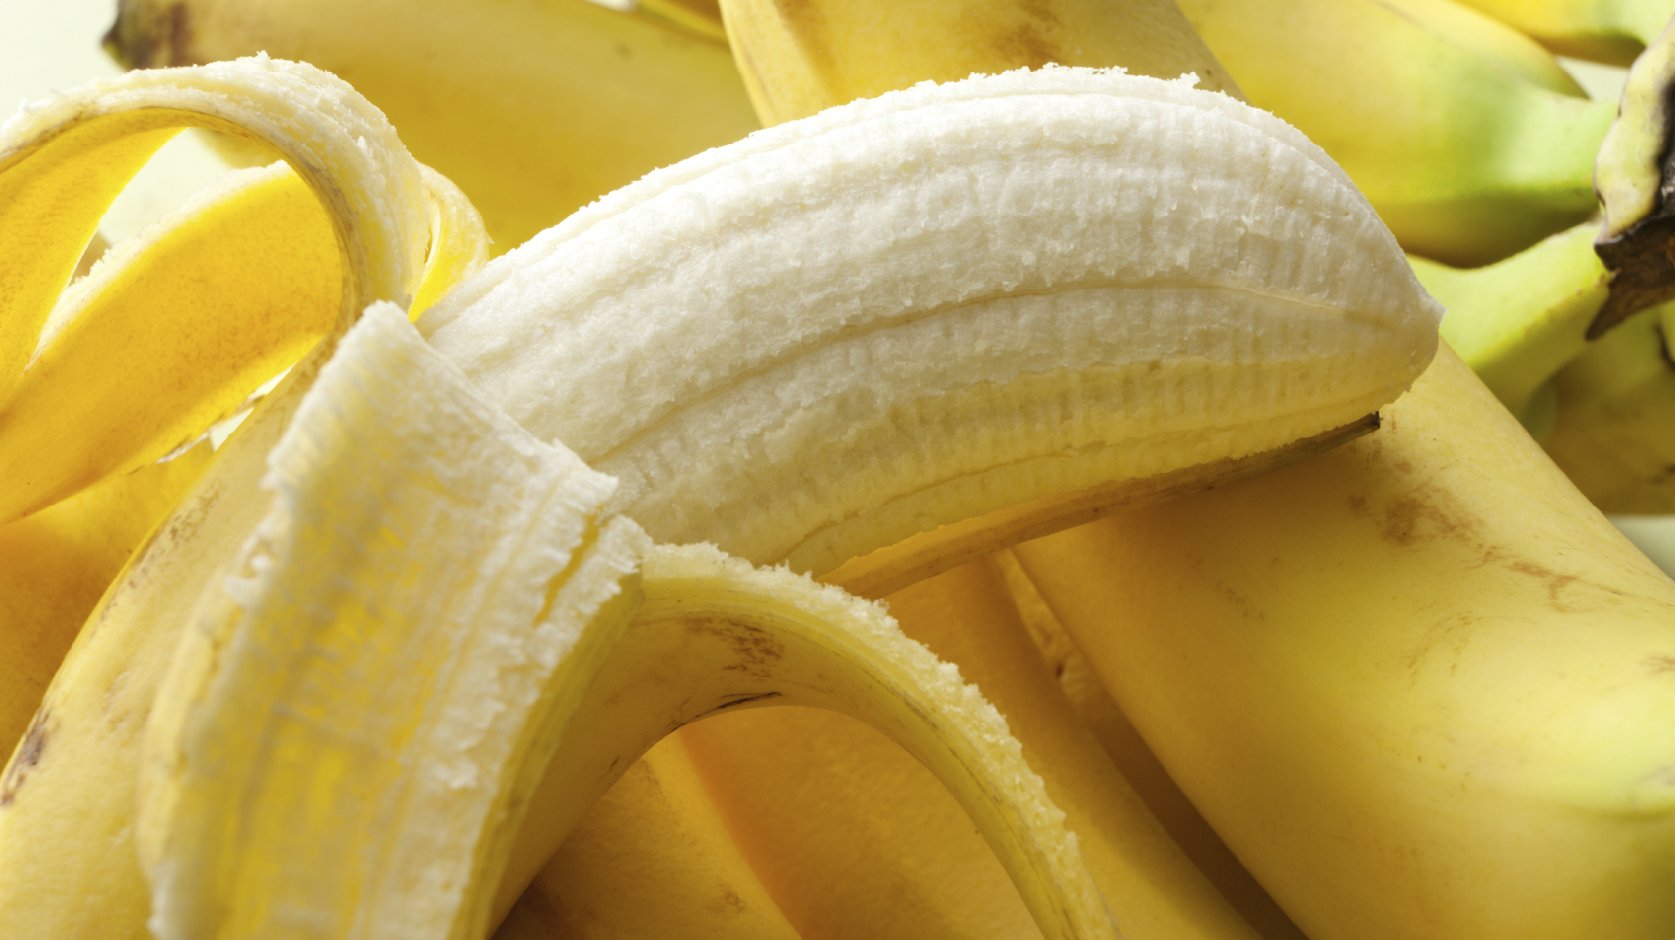  En 5 o 10 años, los plátanos se podrían extinguir